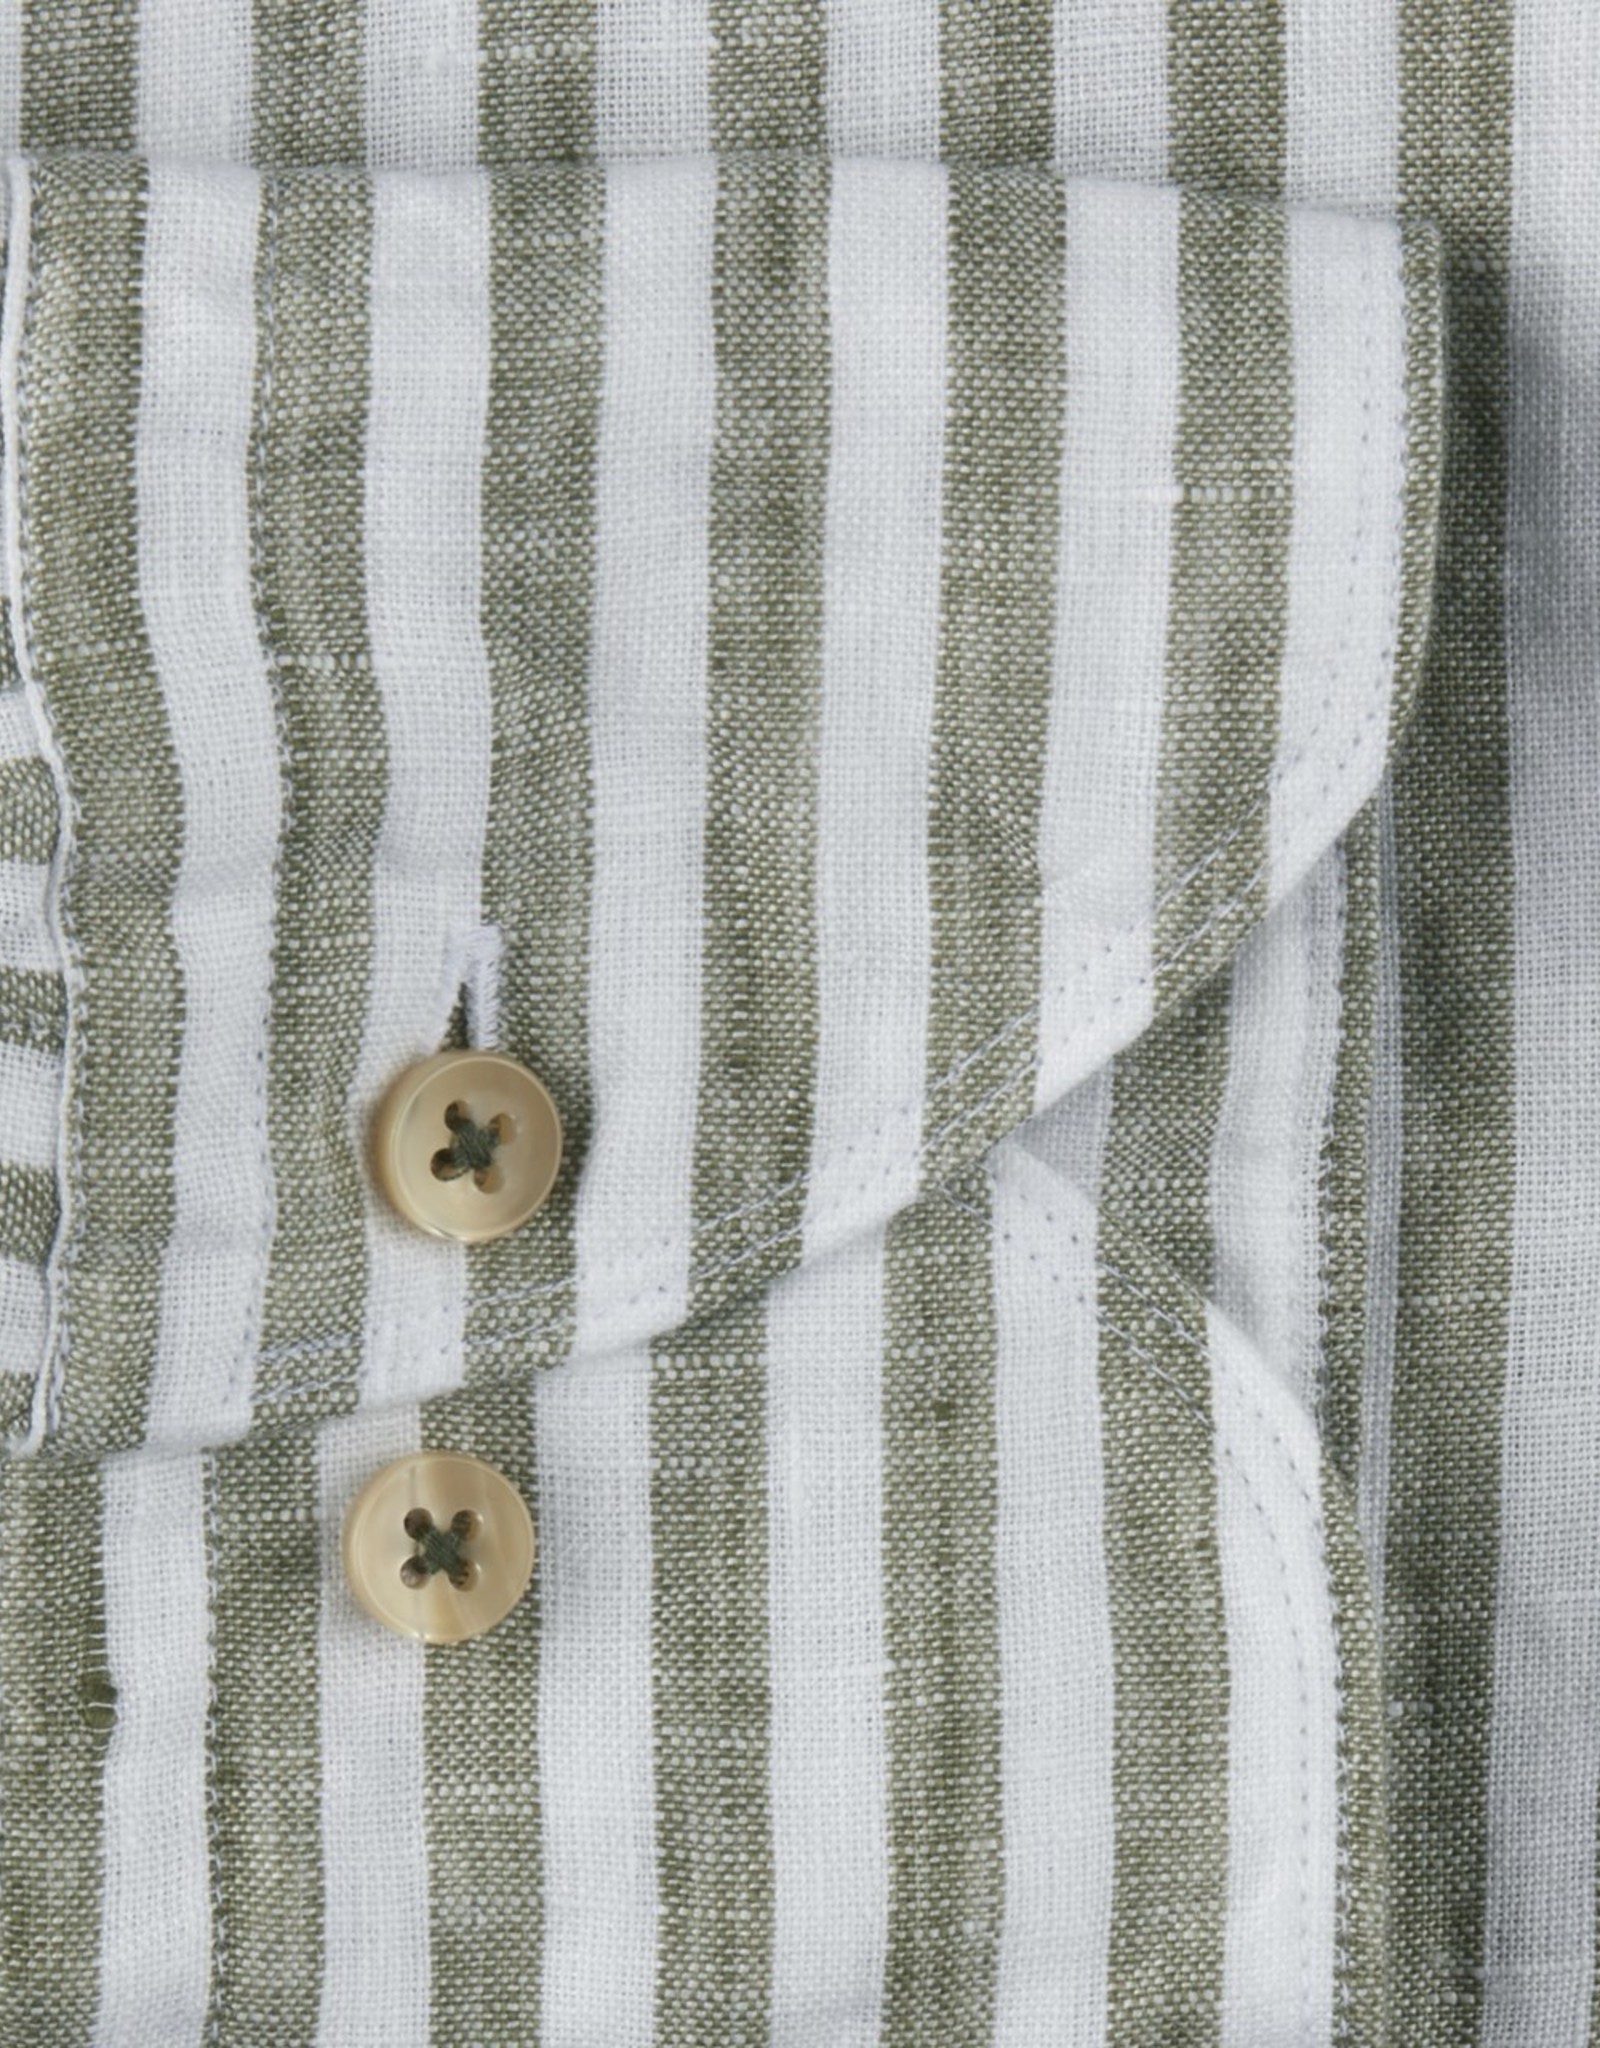 Stenströms Stenstroms Linen Stripe Shirt